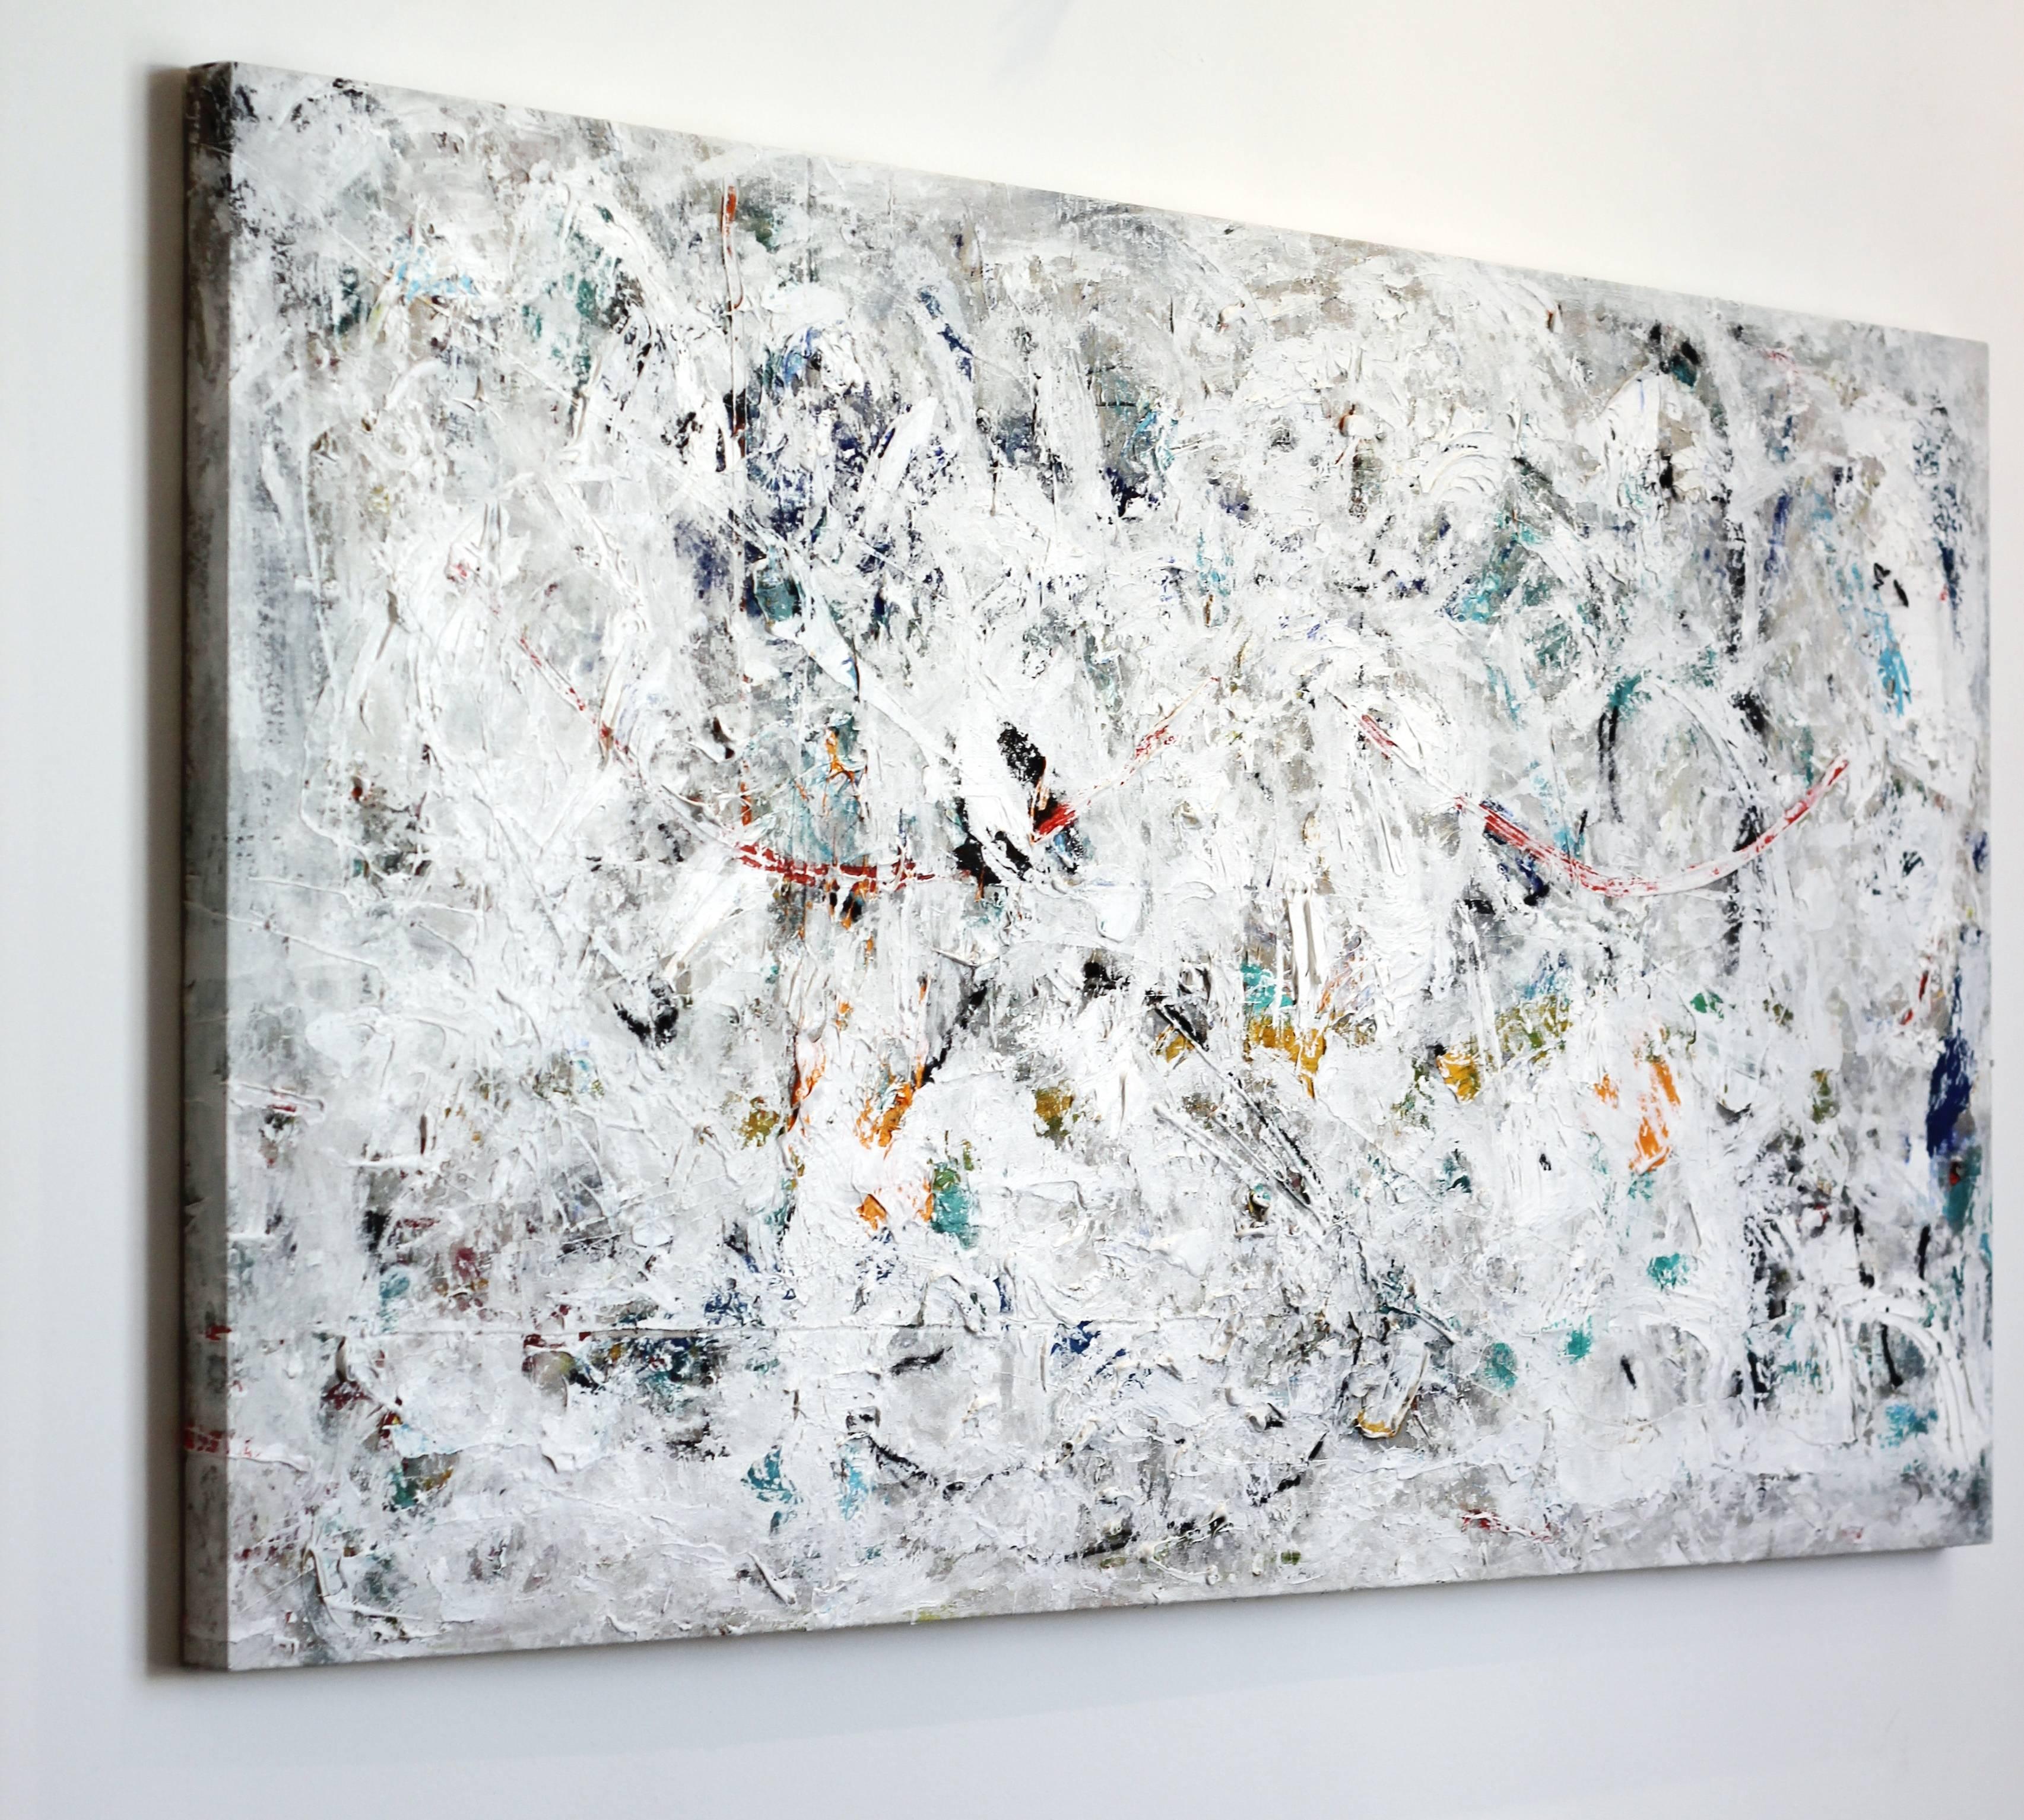 Hiraeth - Gray Abstract Painting by Shauna La